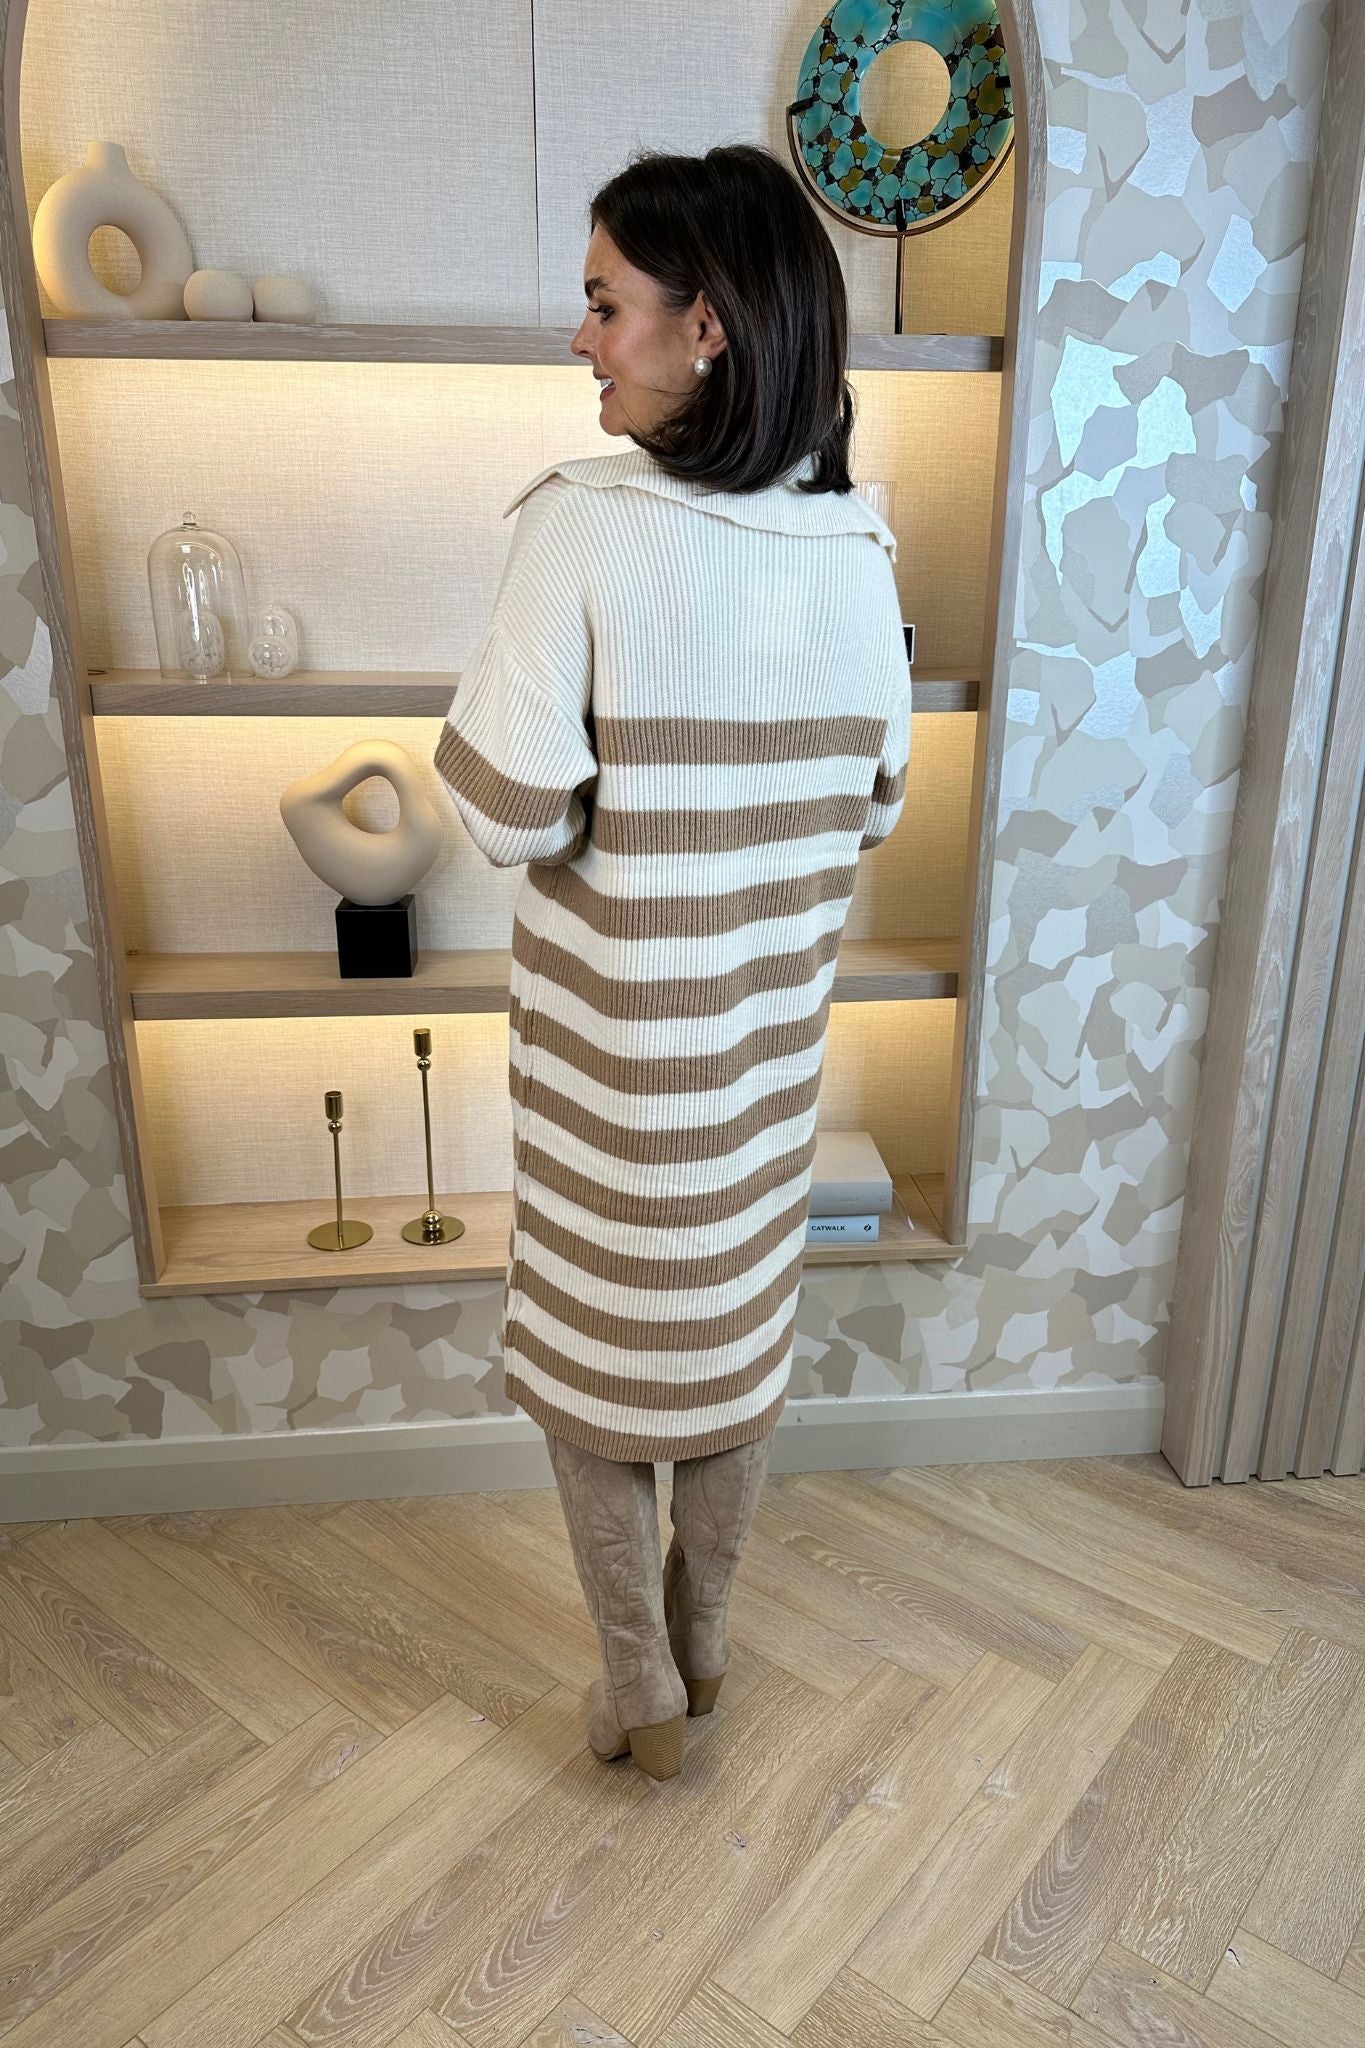 Jayme Knit Midi Dress In Beige & Tan - The Walk in Wardrobe